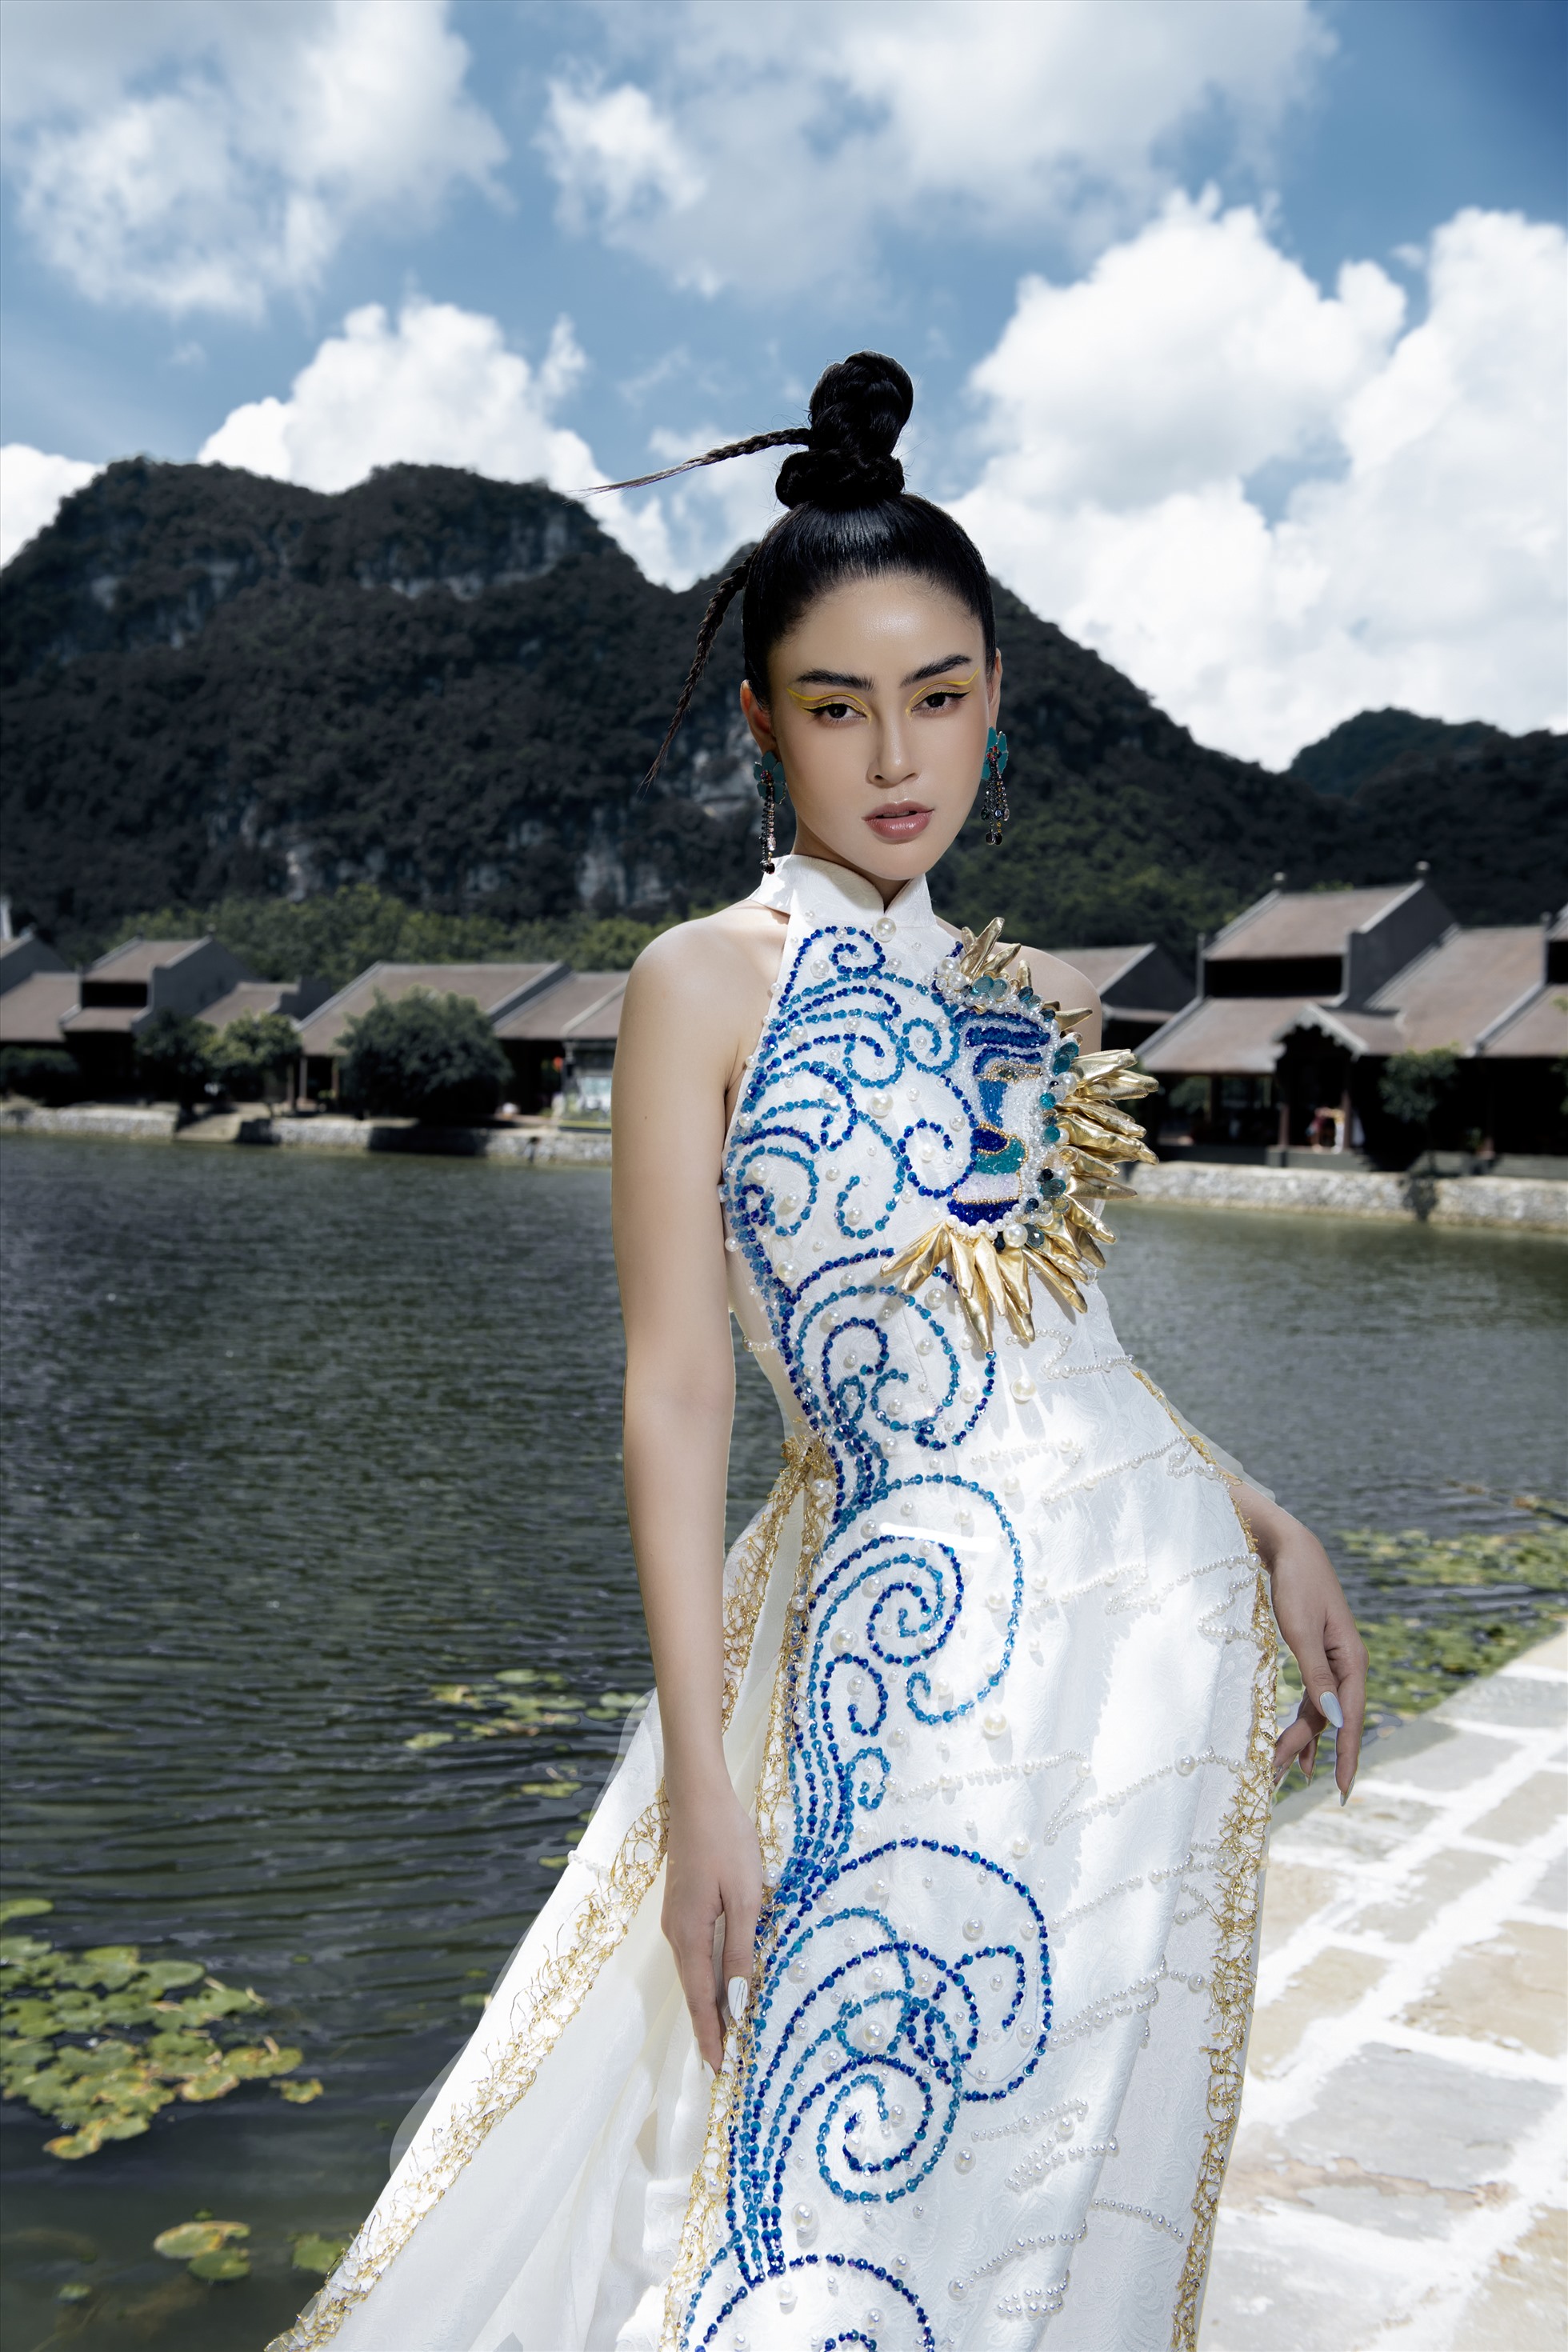 Áo dài khoét vai màu xanh được thiết kế trên nền vải gấm, đính kết hạt ngọc trai tạo nét quyền lực cho Lý Kim Thảo.